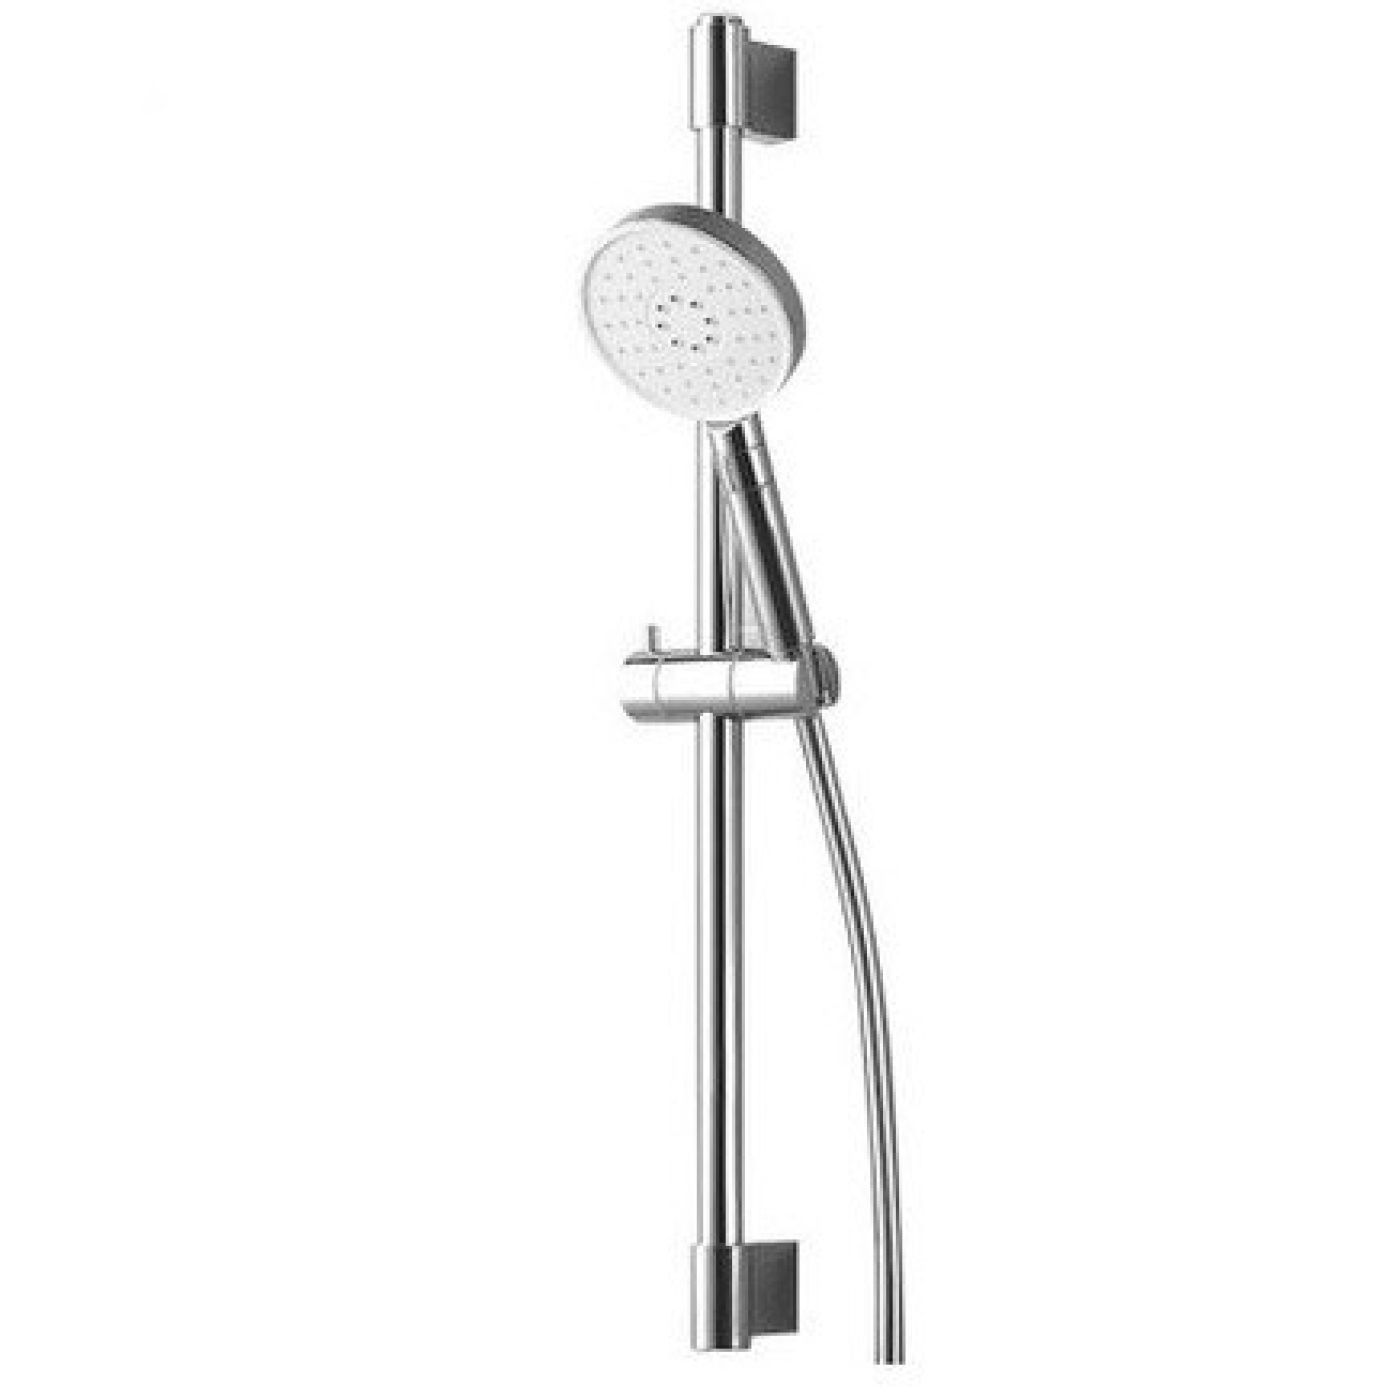 Full Bộ 3 in1 : dây + vòi sen + cây tắm đứng tăng áp Xiaomi Large white hose shower lift set